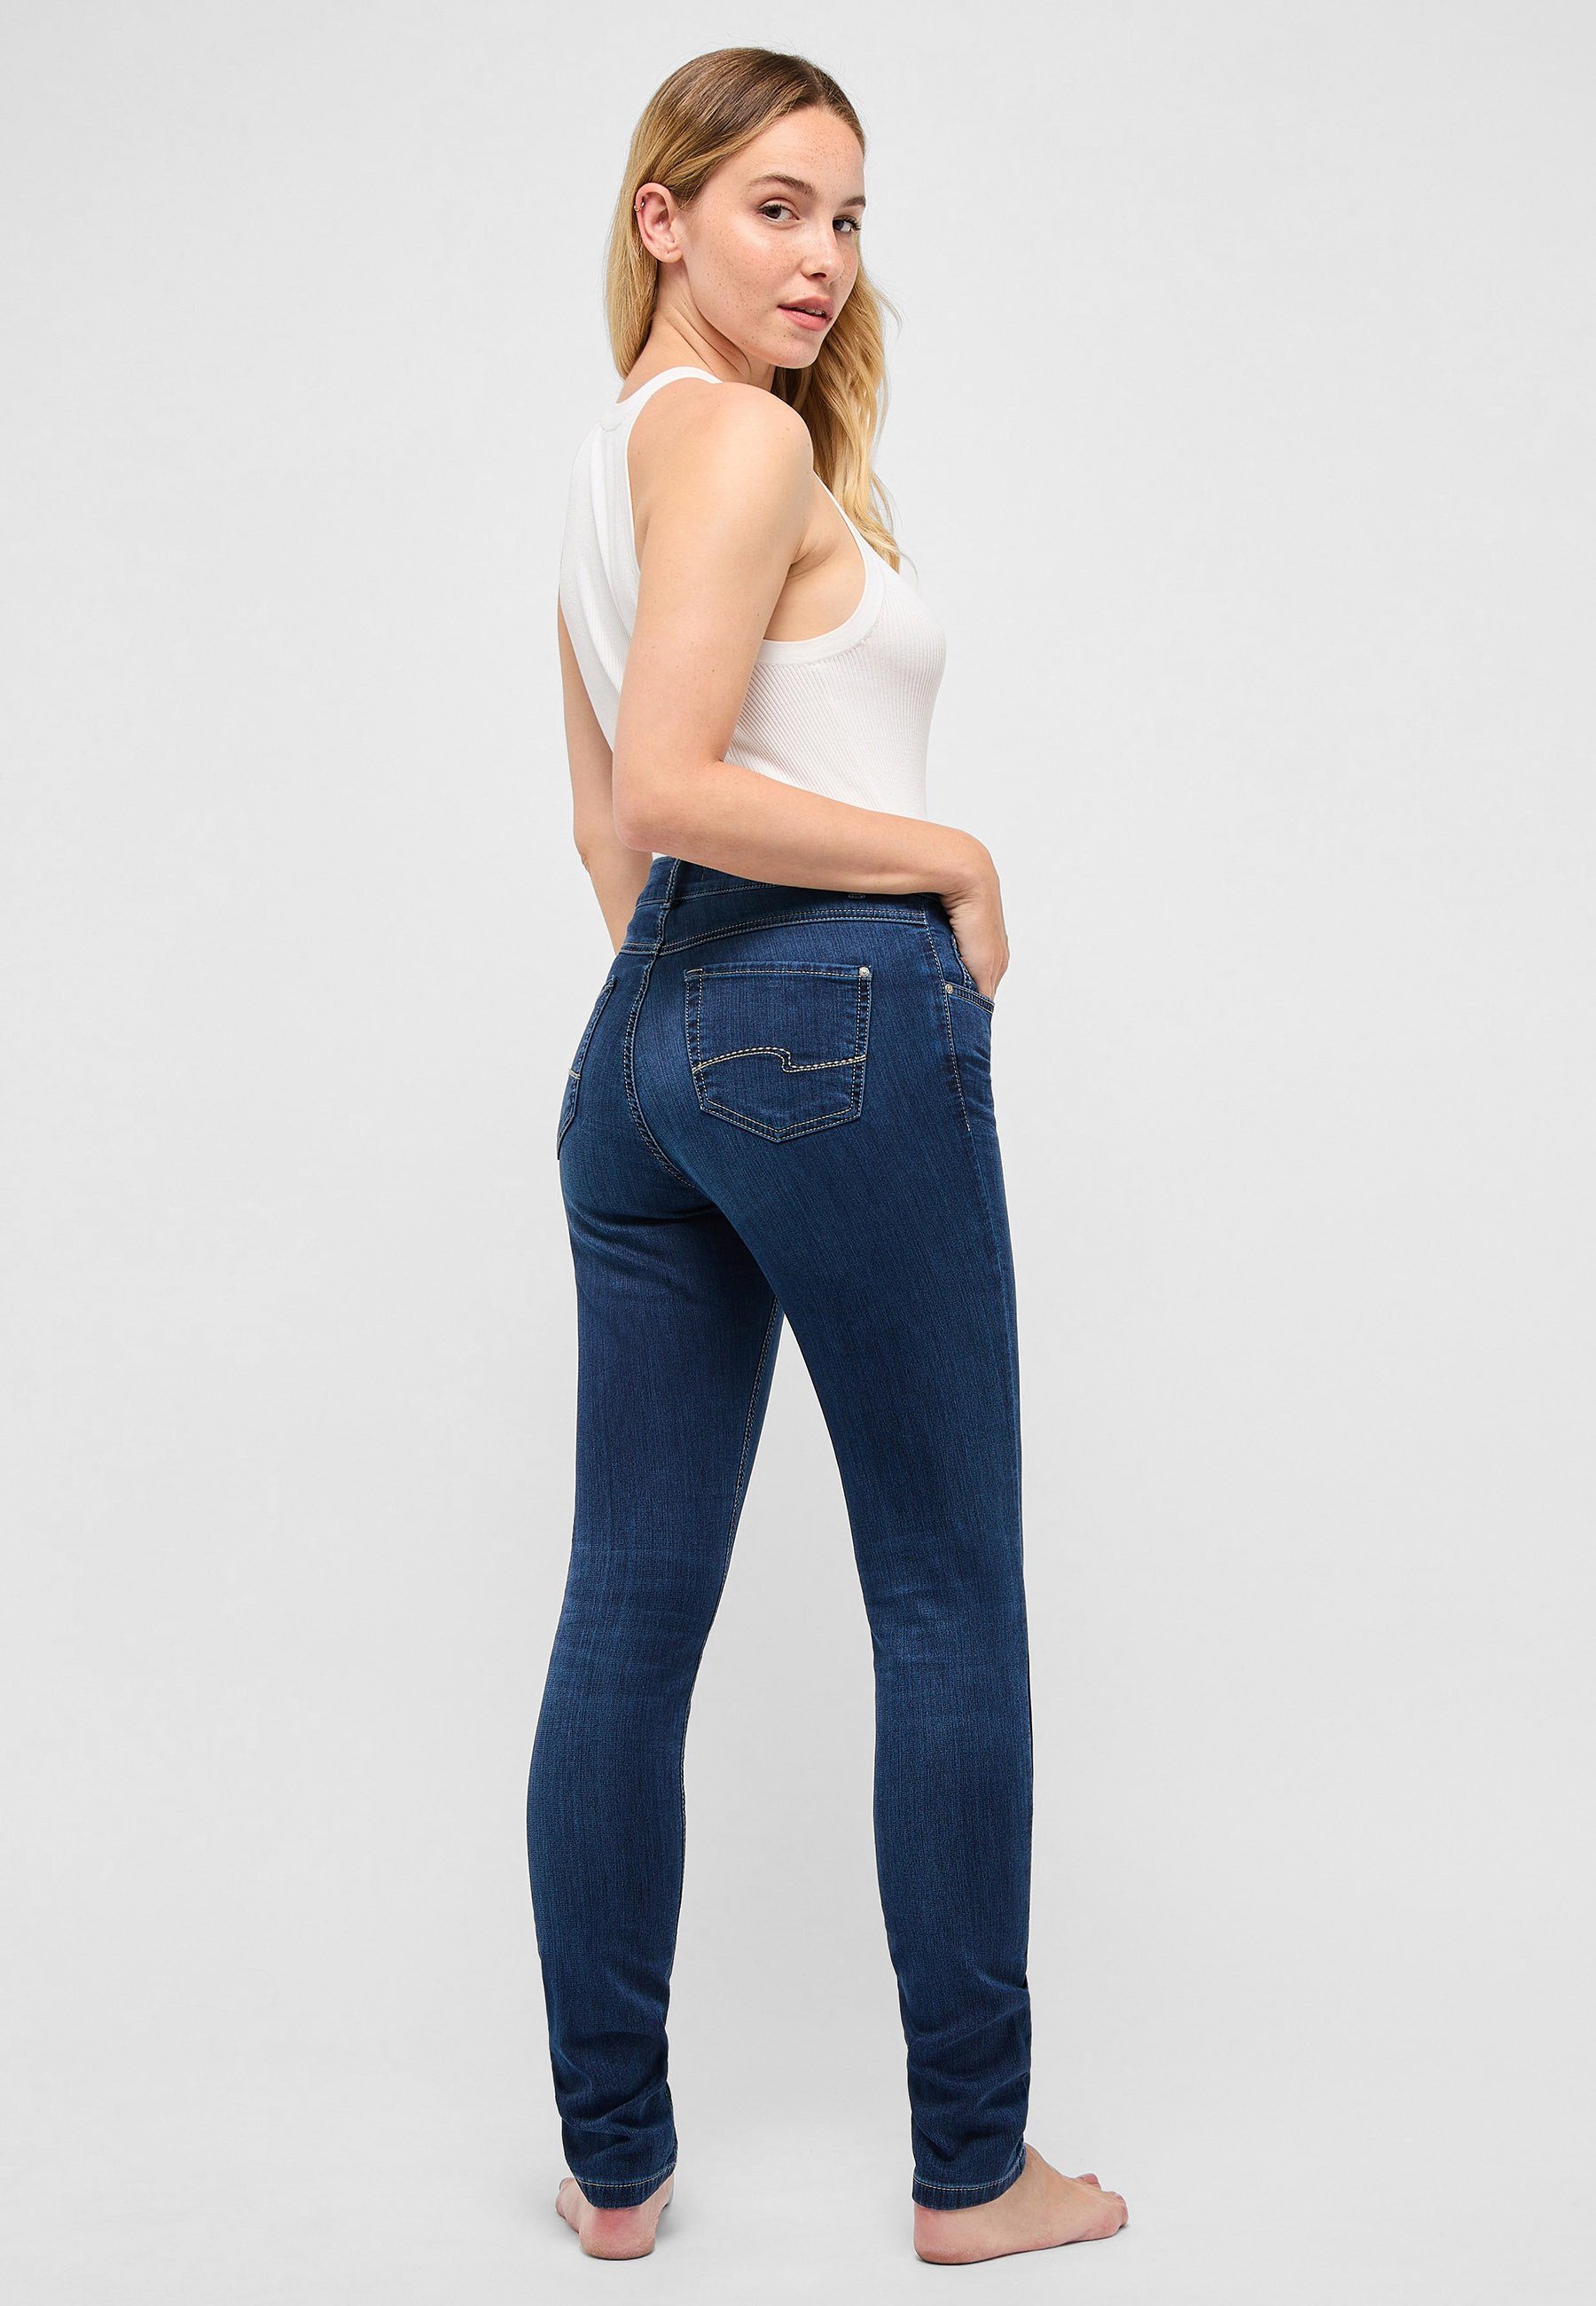 Skinny mit mit Slim-fit-Jeans Stoff Skinny-fit-Jeans unifarbenem dunkelblau ANGELS Label-Applikationen